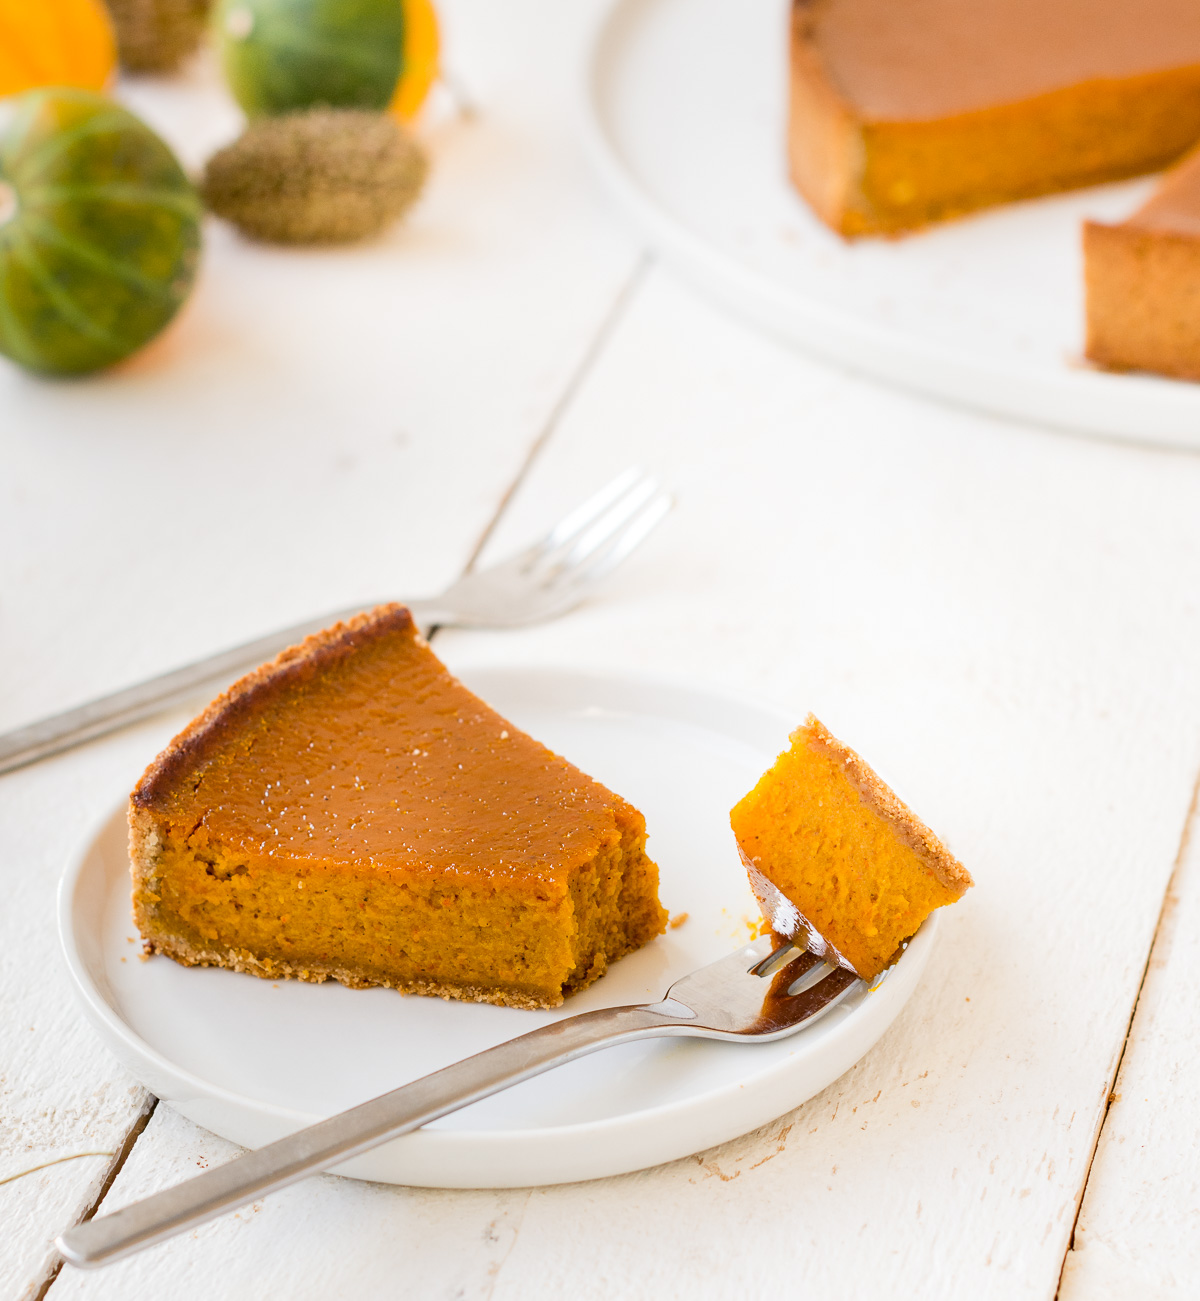 Foto von einem Stück glutenfreien Kürbis-Tarte (Pumpkin Pie) auf einem Teller mit Kürbissen und Kuchen im Hintergrund.